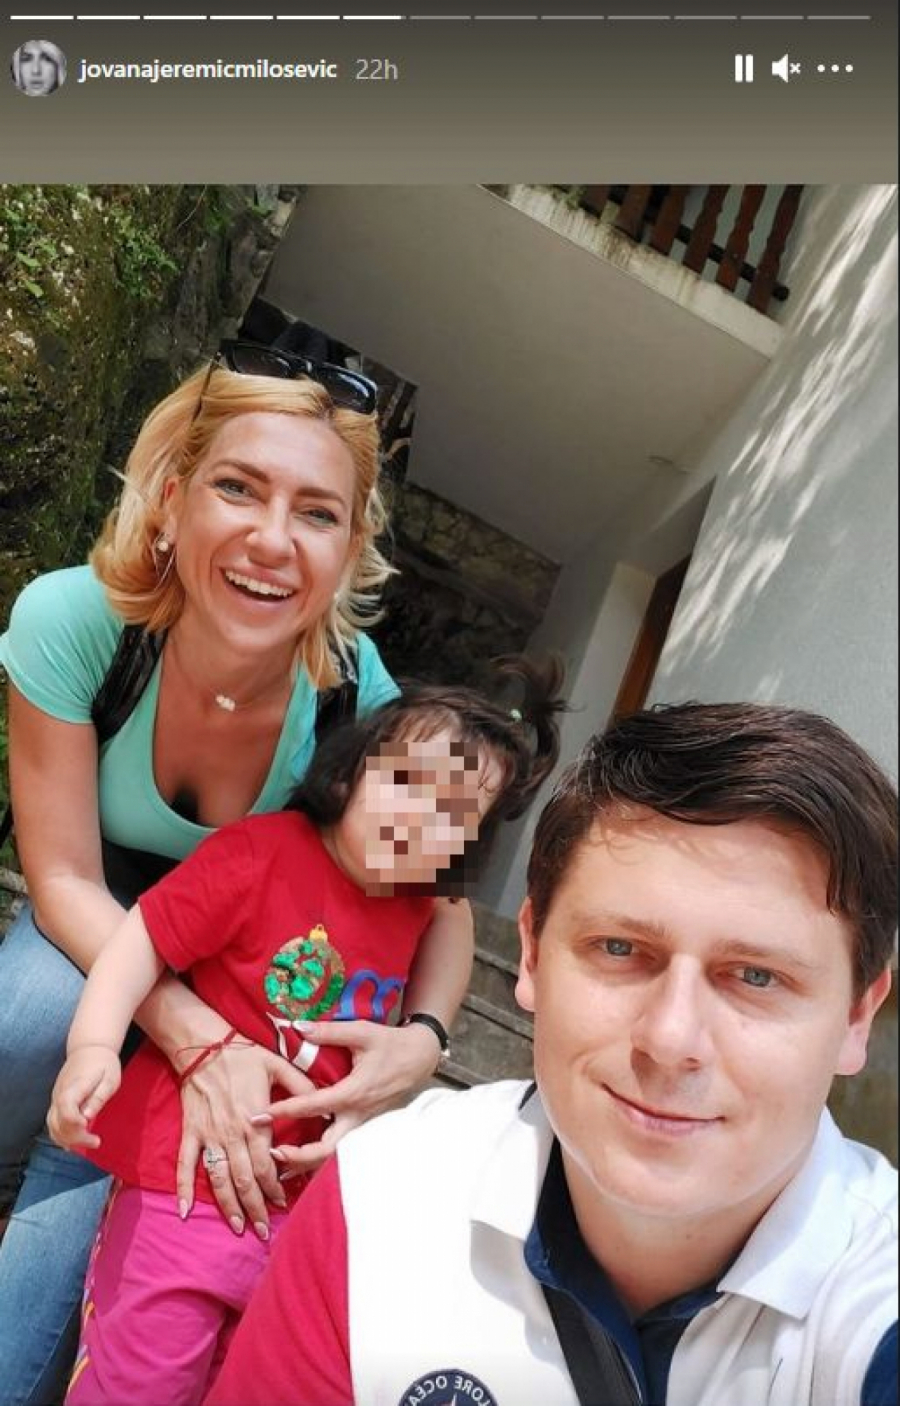 POBEGLA U MANASTIR Jovana Jeremić vreme s porodicom provodi na ovom mestu, voditeljka pokazala kako se rešava stresa (FOTO)